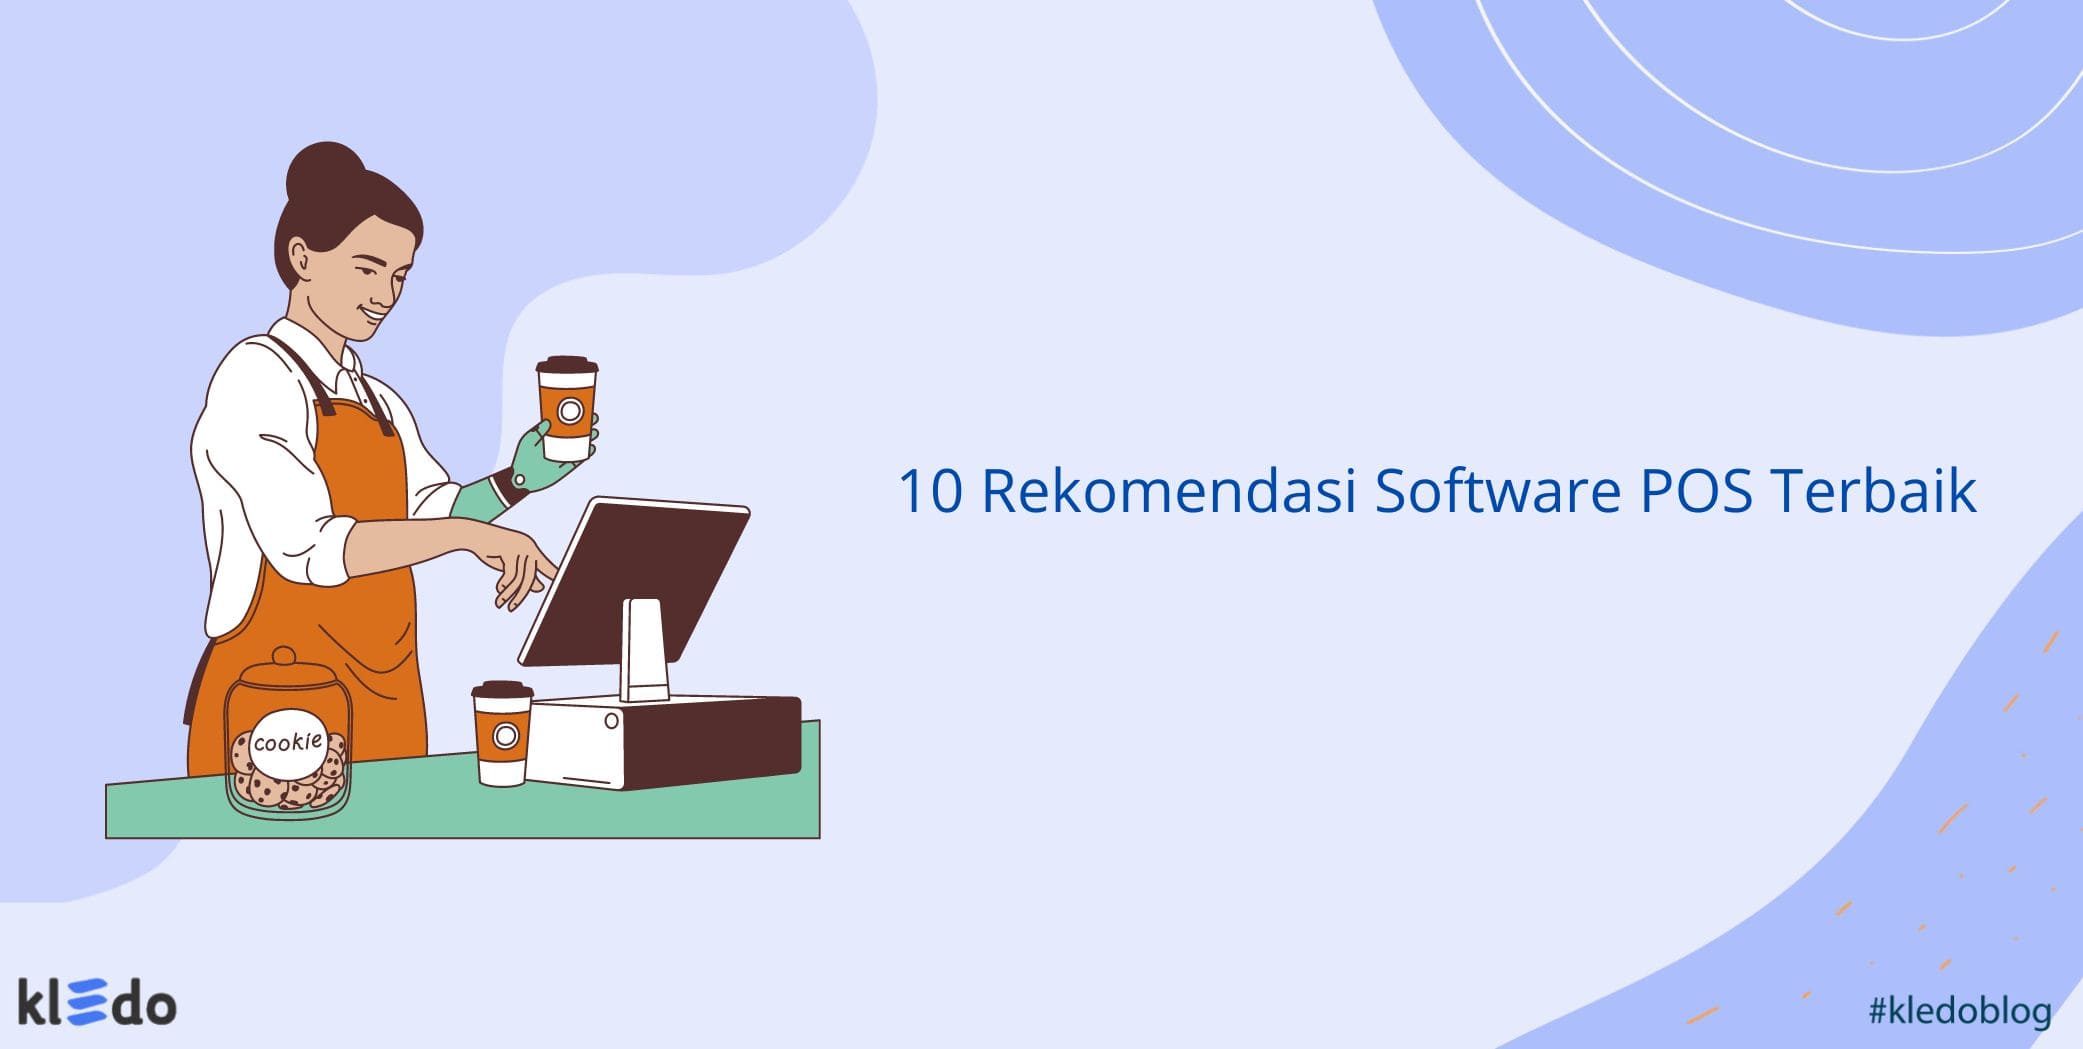 10 Rekomendasi Software POS